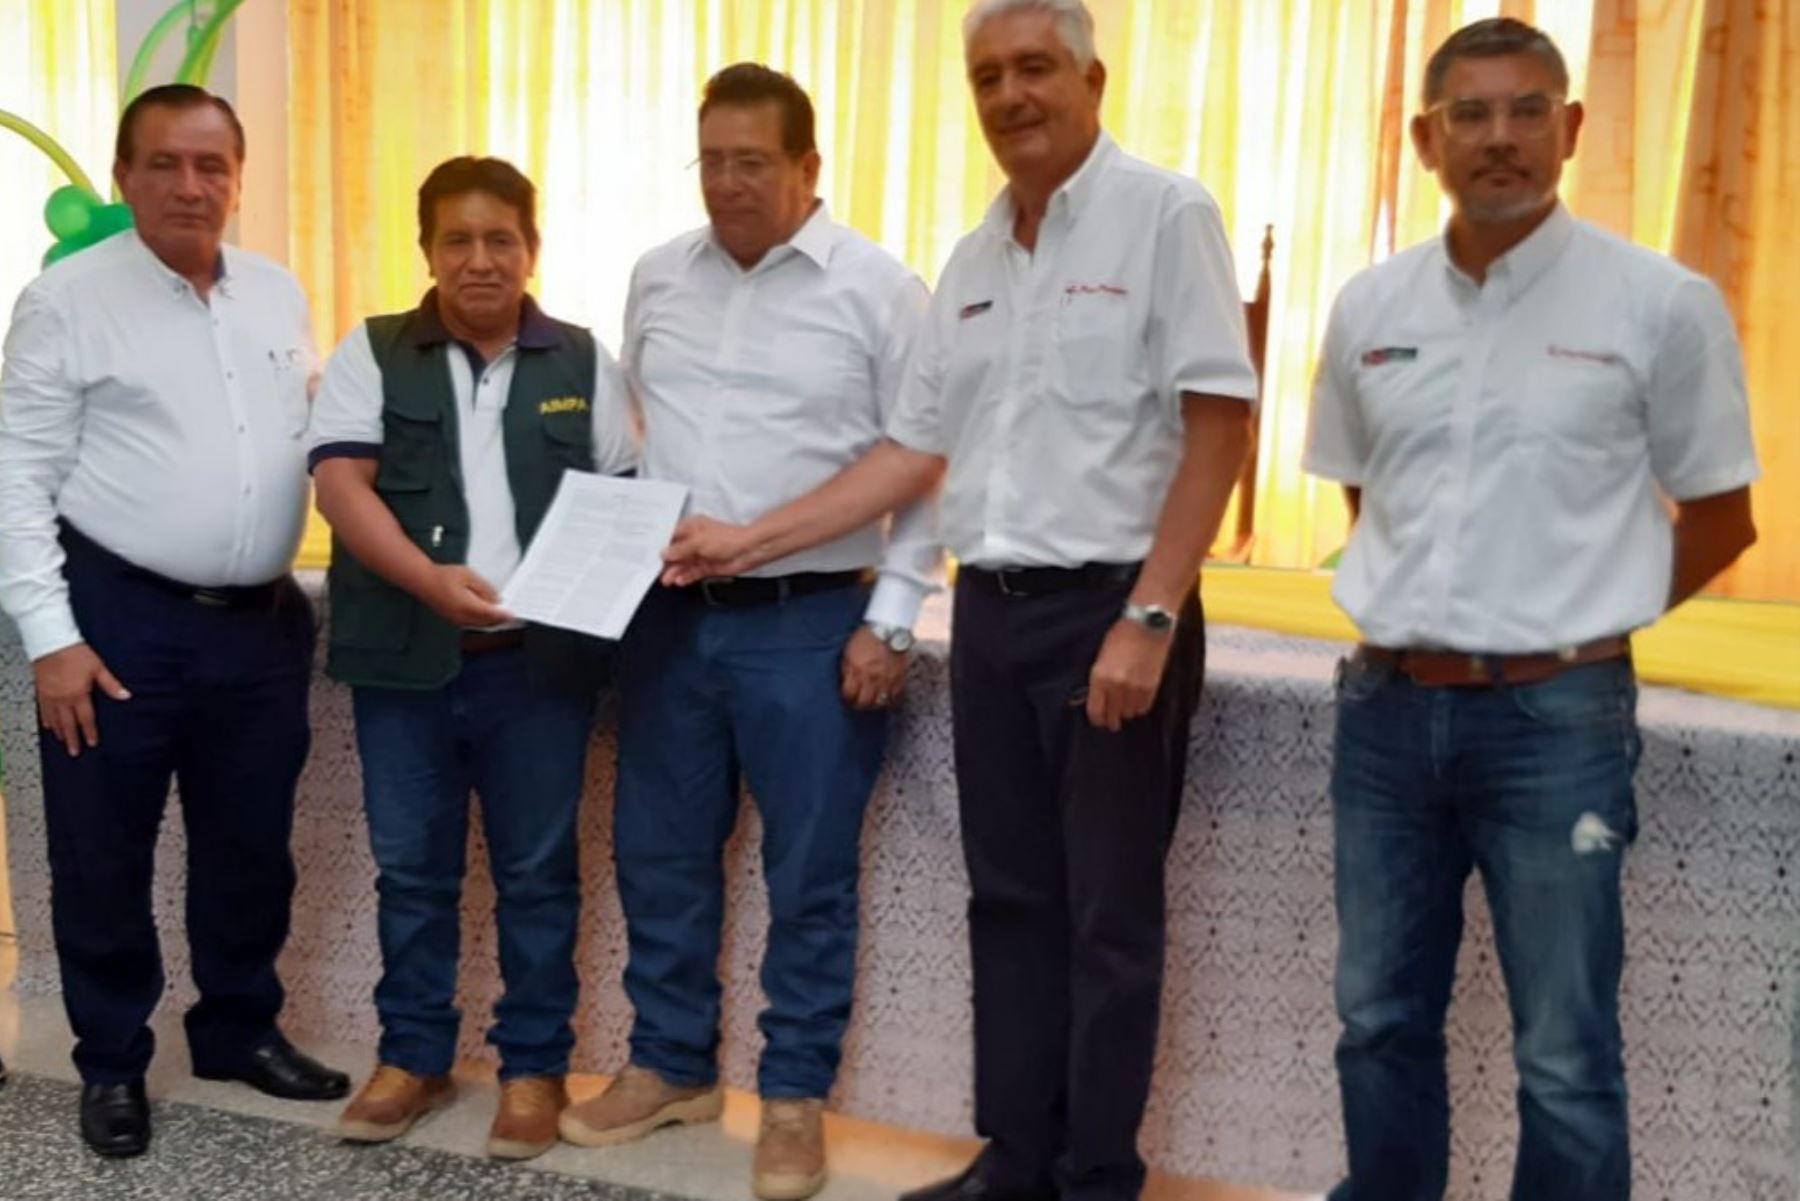 El director del Servicio Nacional Forestal y de Fauna Silvestre (Serfor), Alberto Gonzales-Zúñiga, entregó a las autoridades de Ucayali la resolución que aprueba el establecimiento del bosque local denominado “AIMPA”, ubicado en la provincia de Padre Abad.